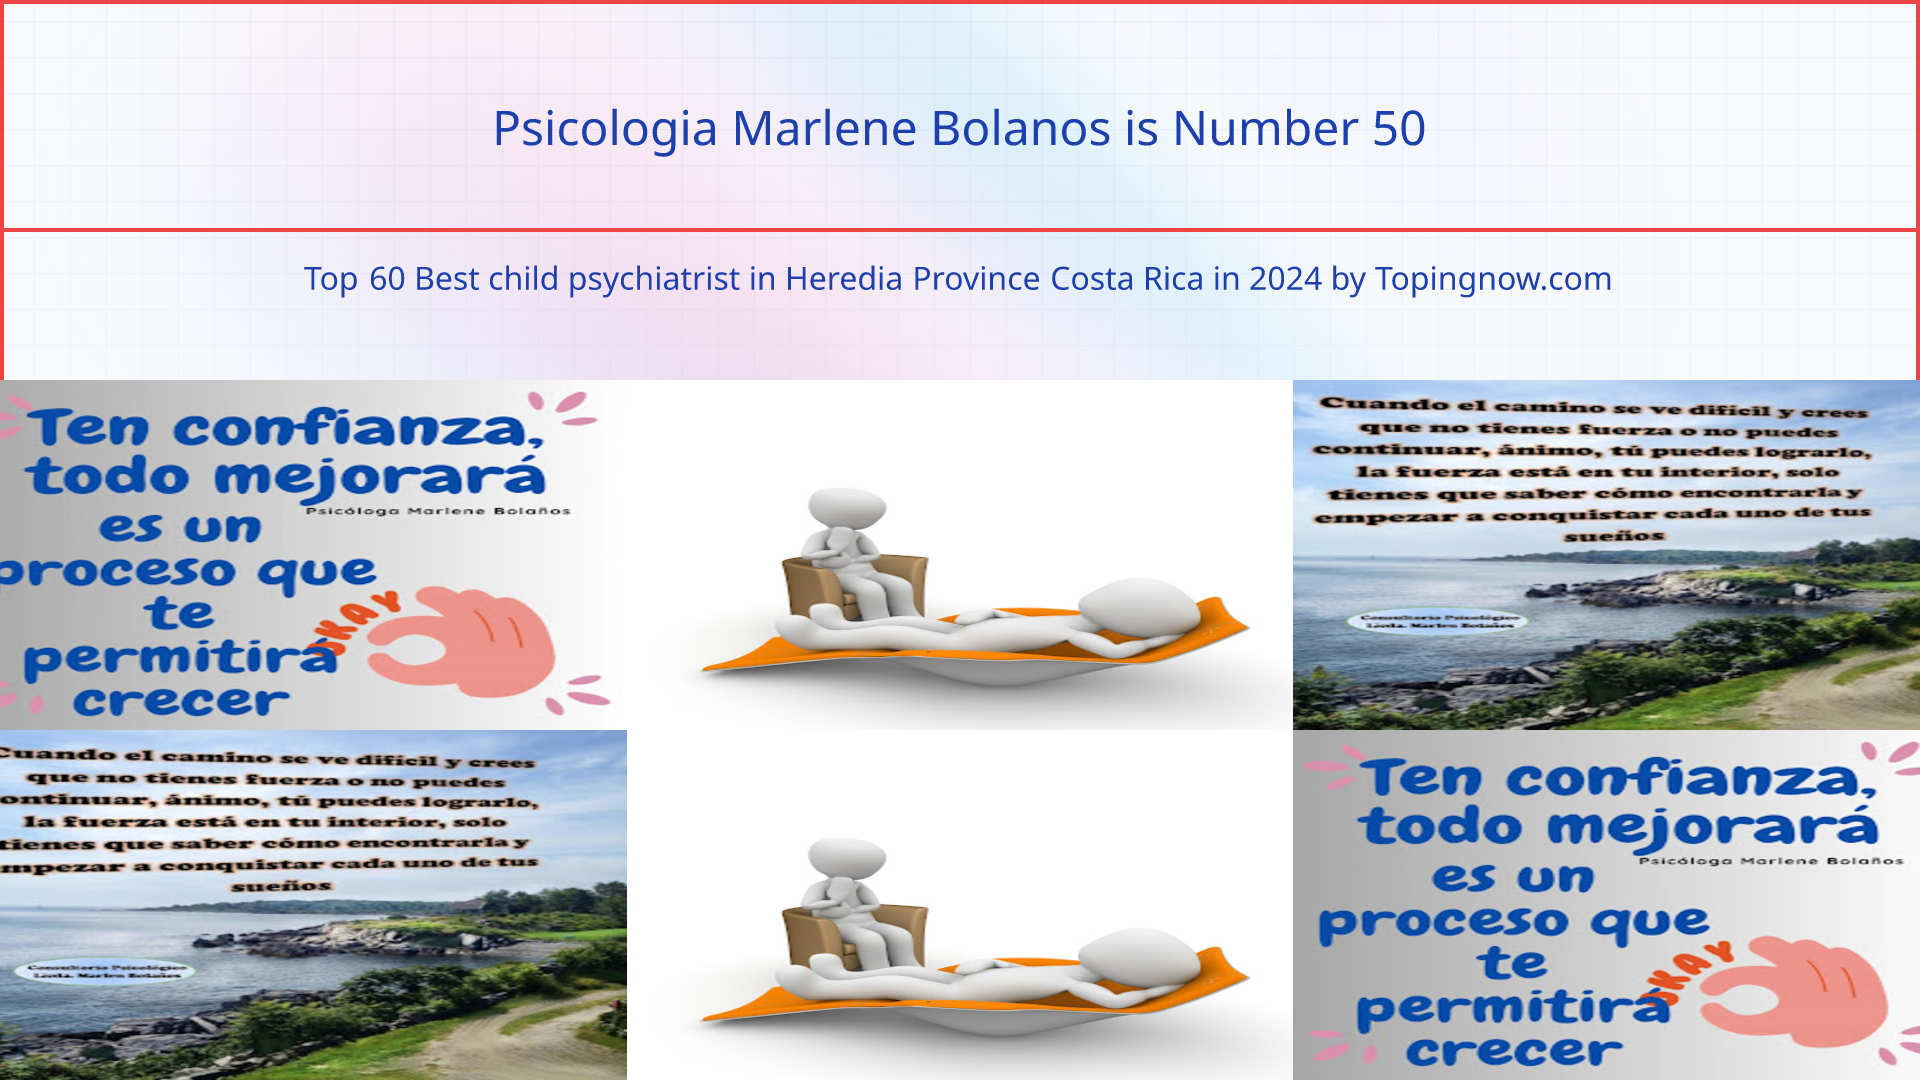 Psicologia Marlene Bolanos: Top 60 Best child psychiatrist in Heredia Province Costa Rica in 2024